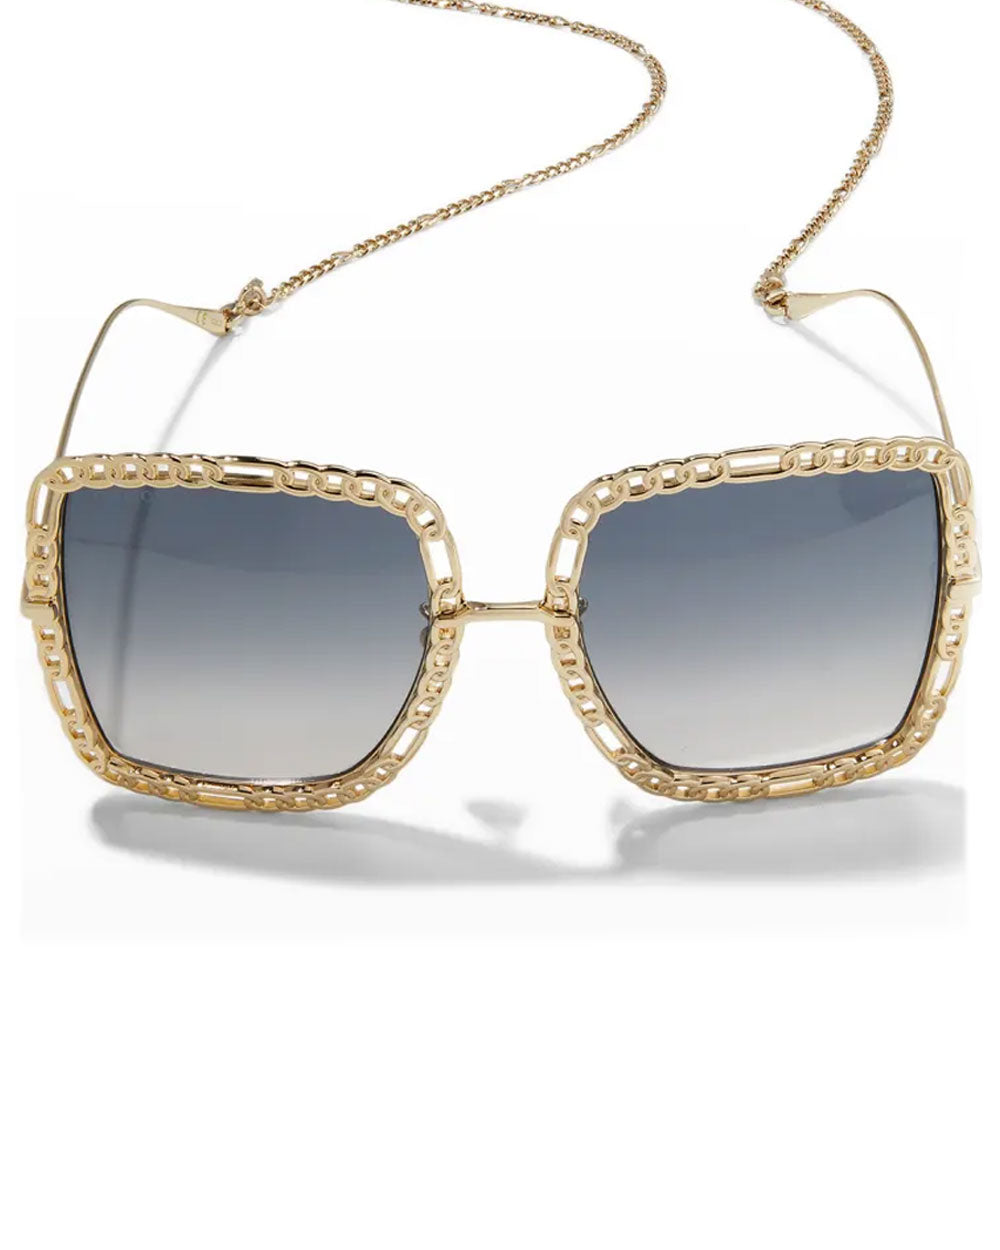 Rectangular sunglasses with chain